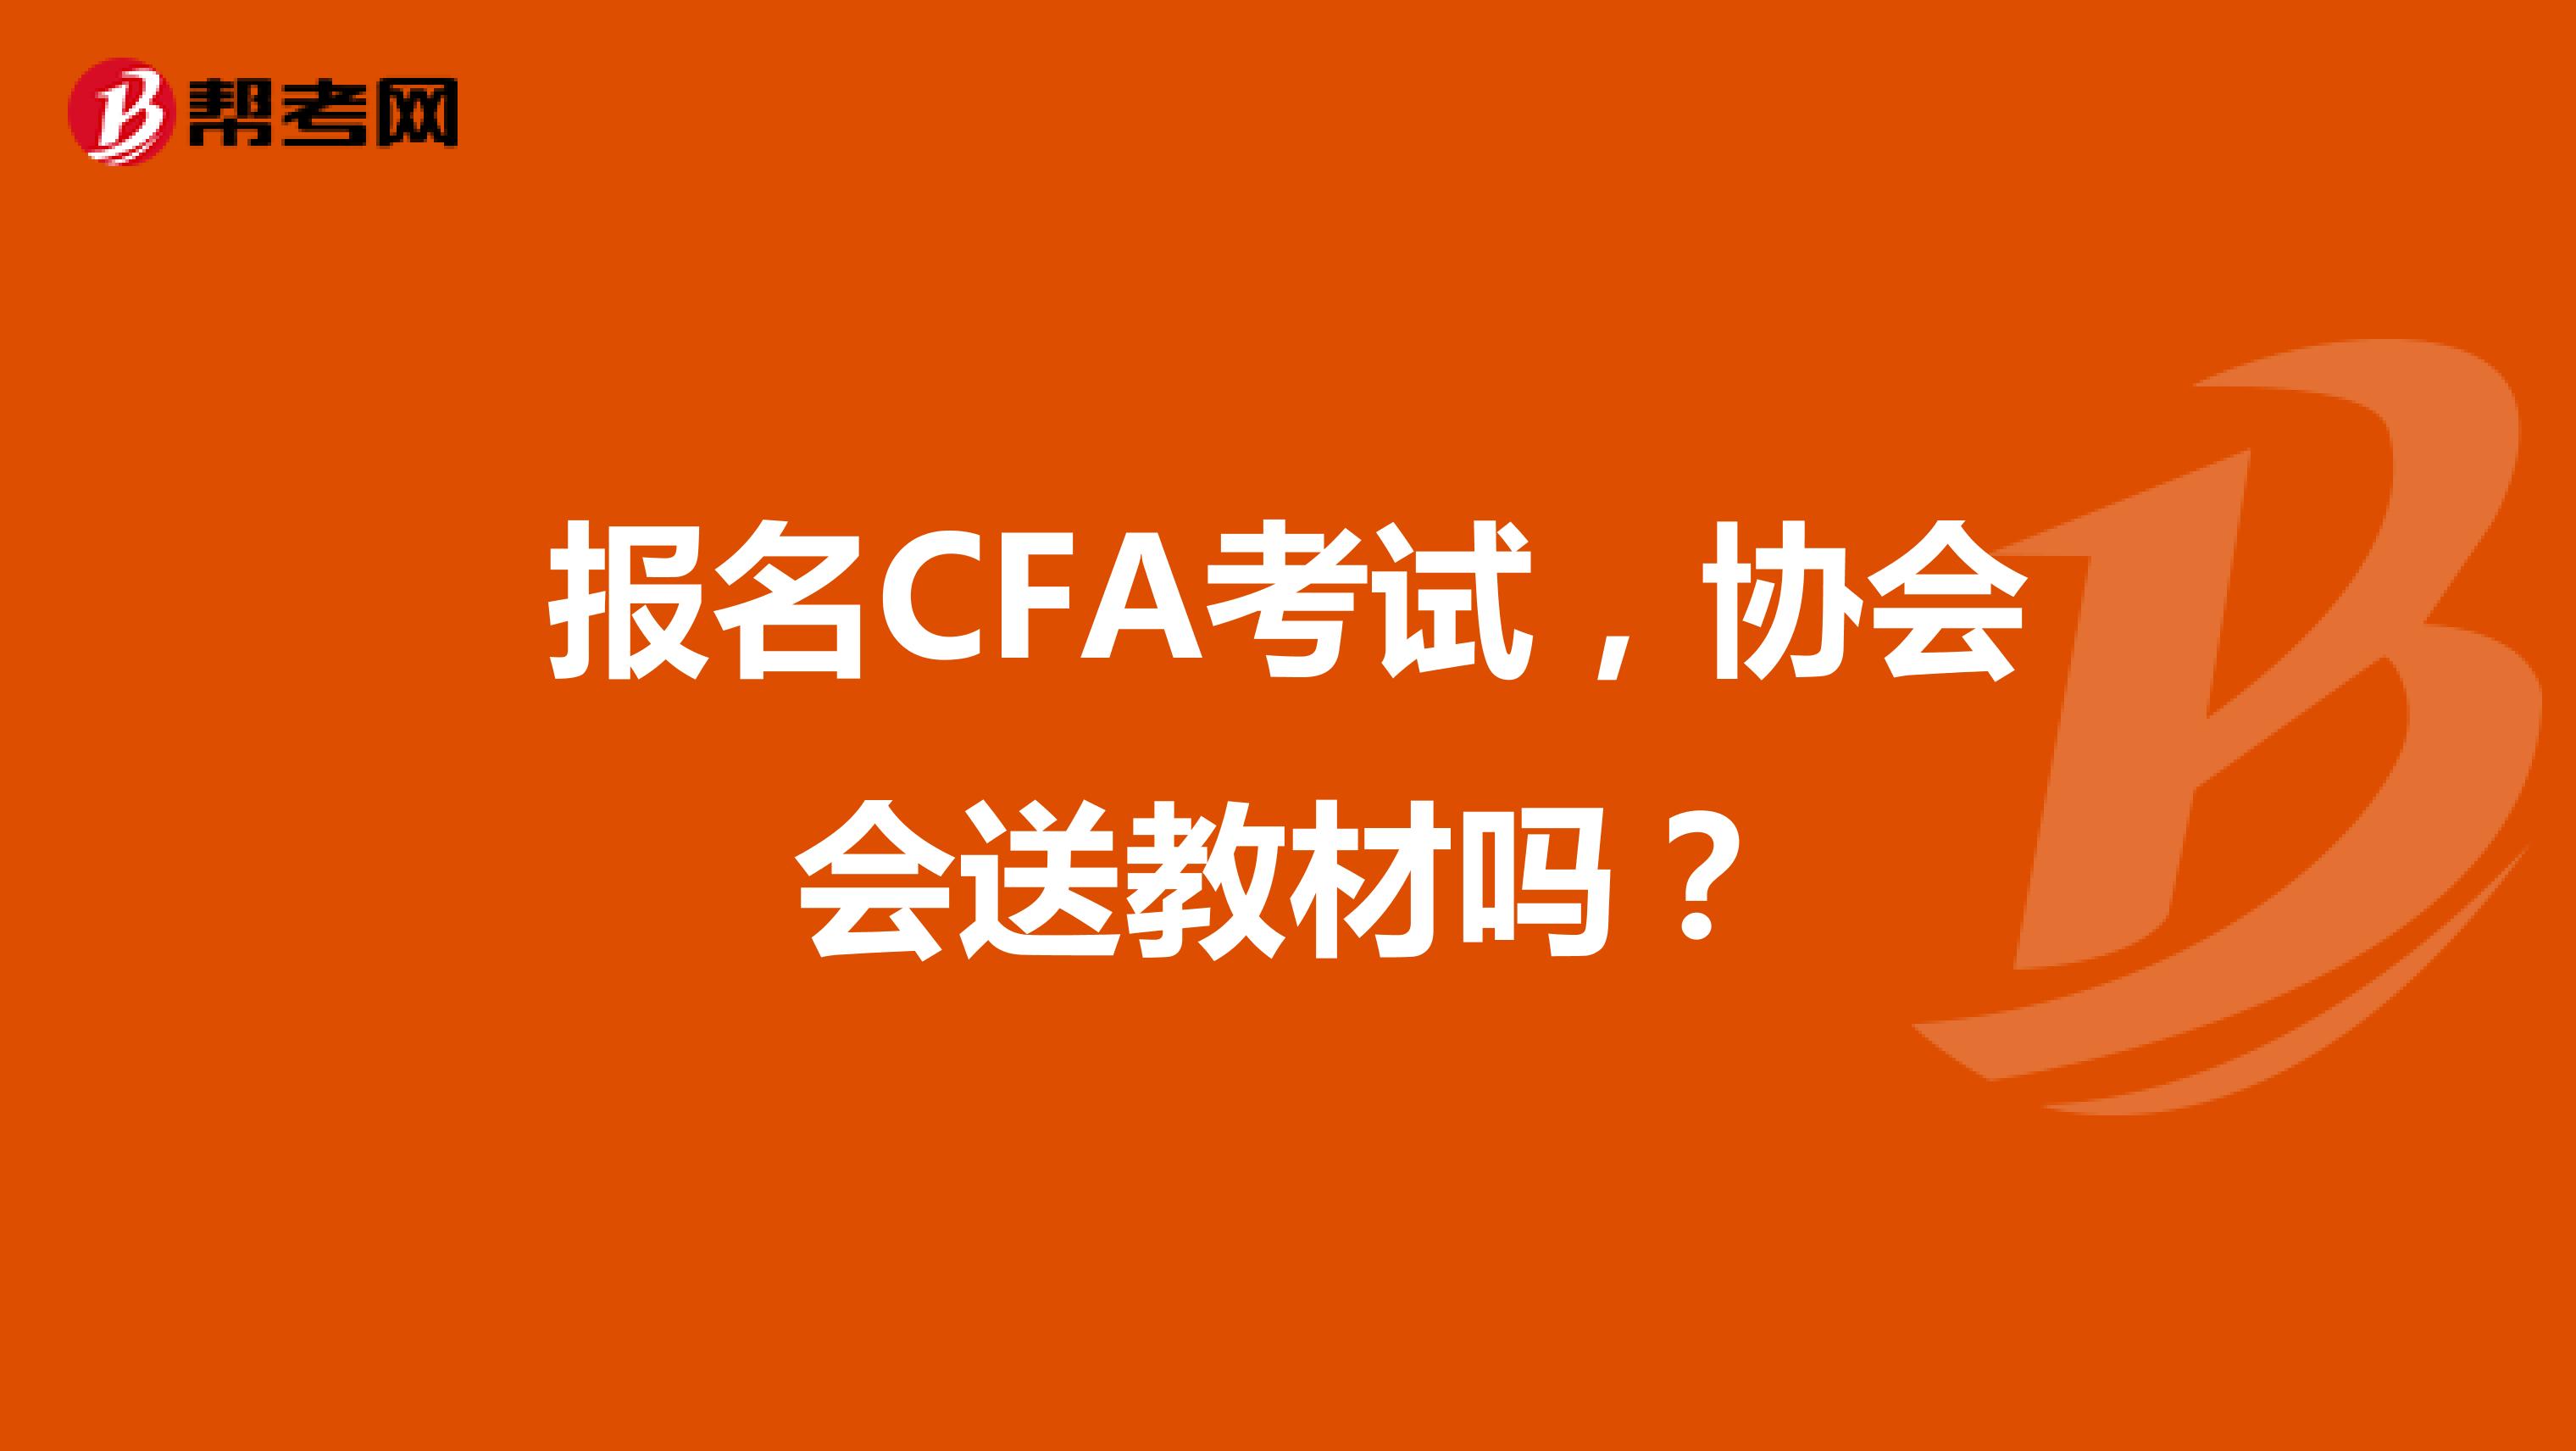 报名CFA考试，协会会送教材吗？